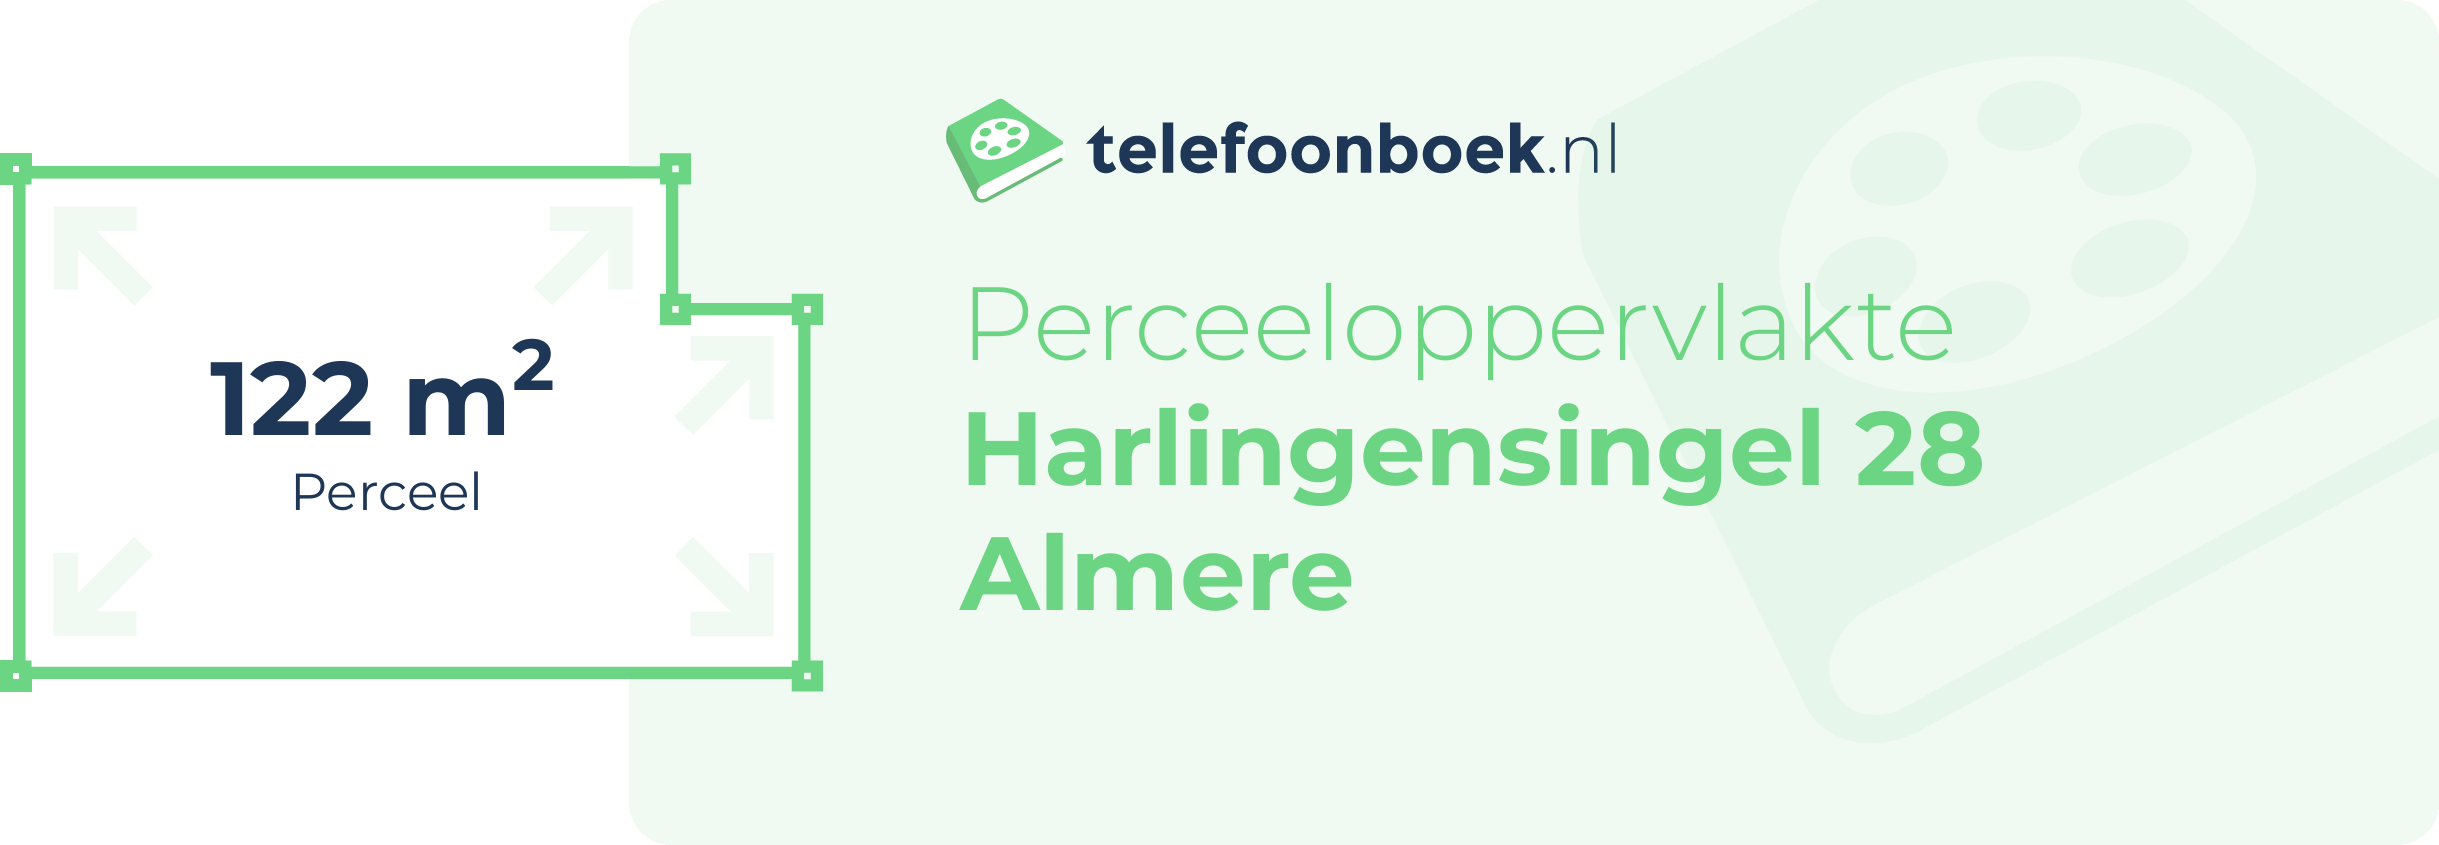 Perceeloppervlakte Harlingensingel 28 Almere